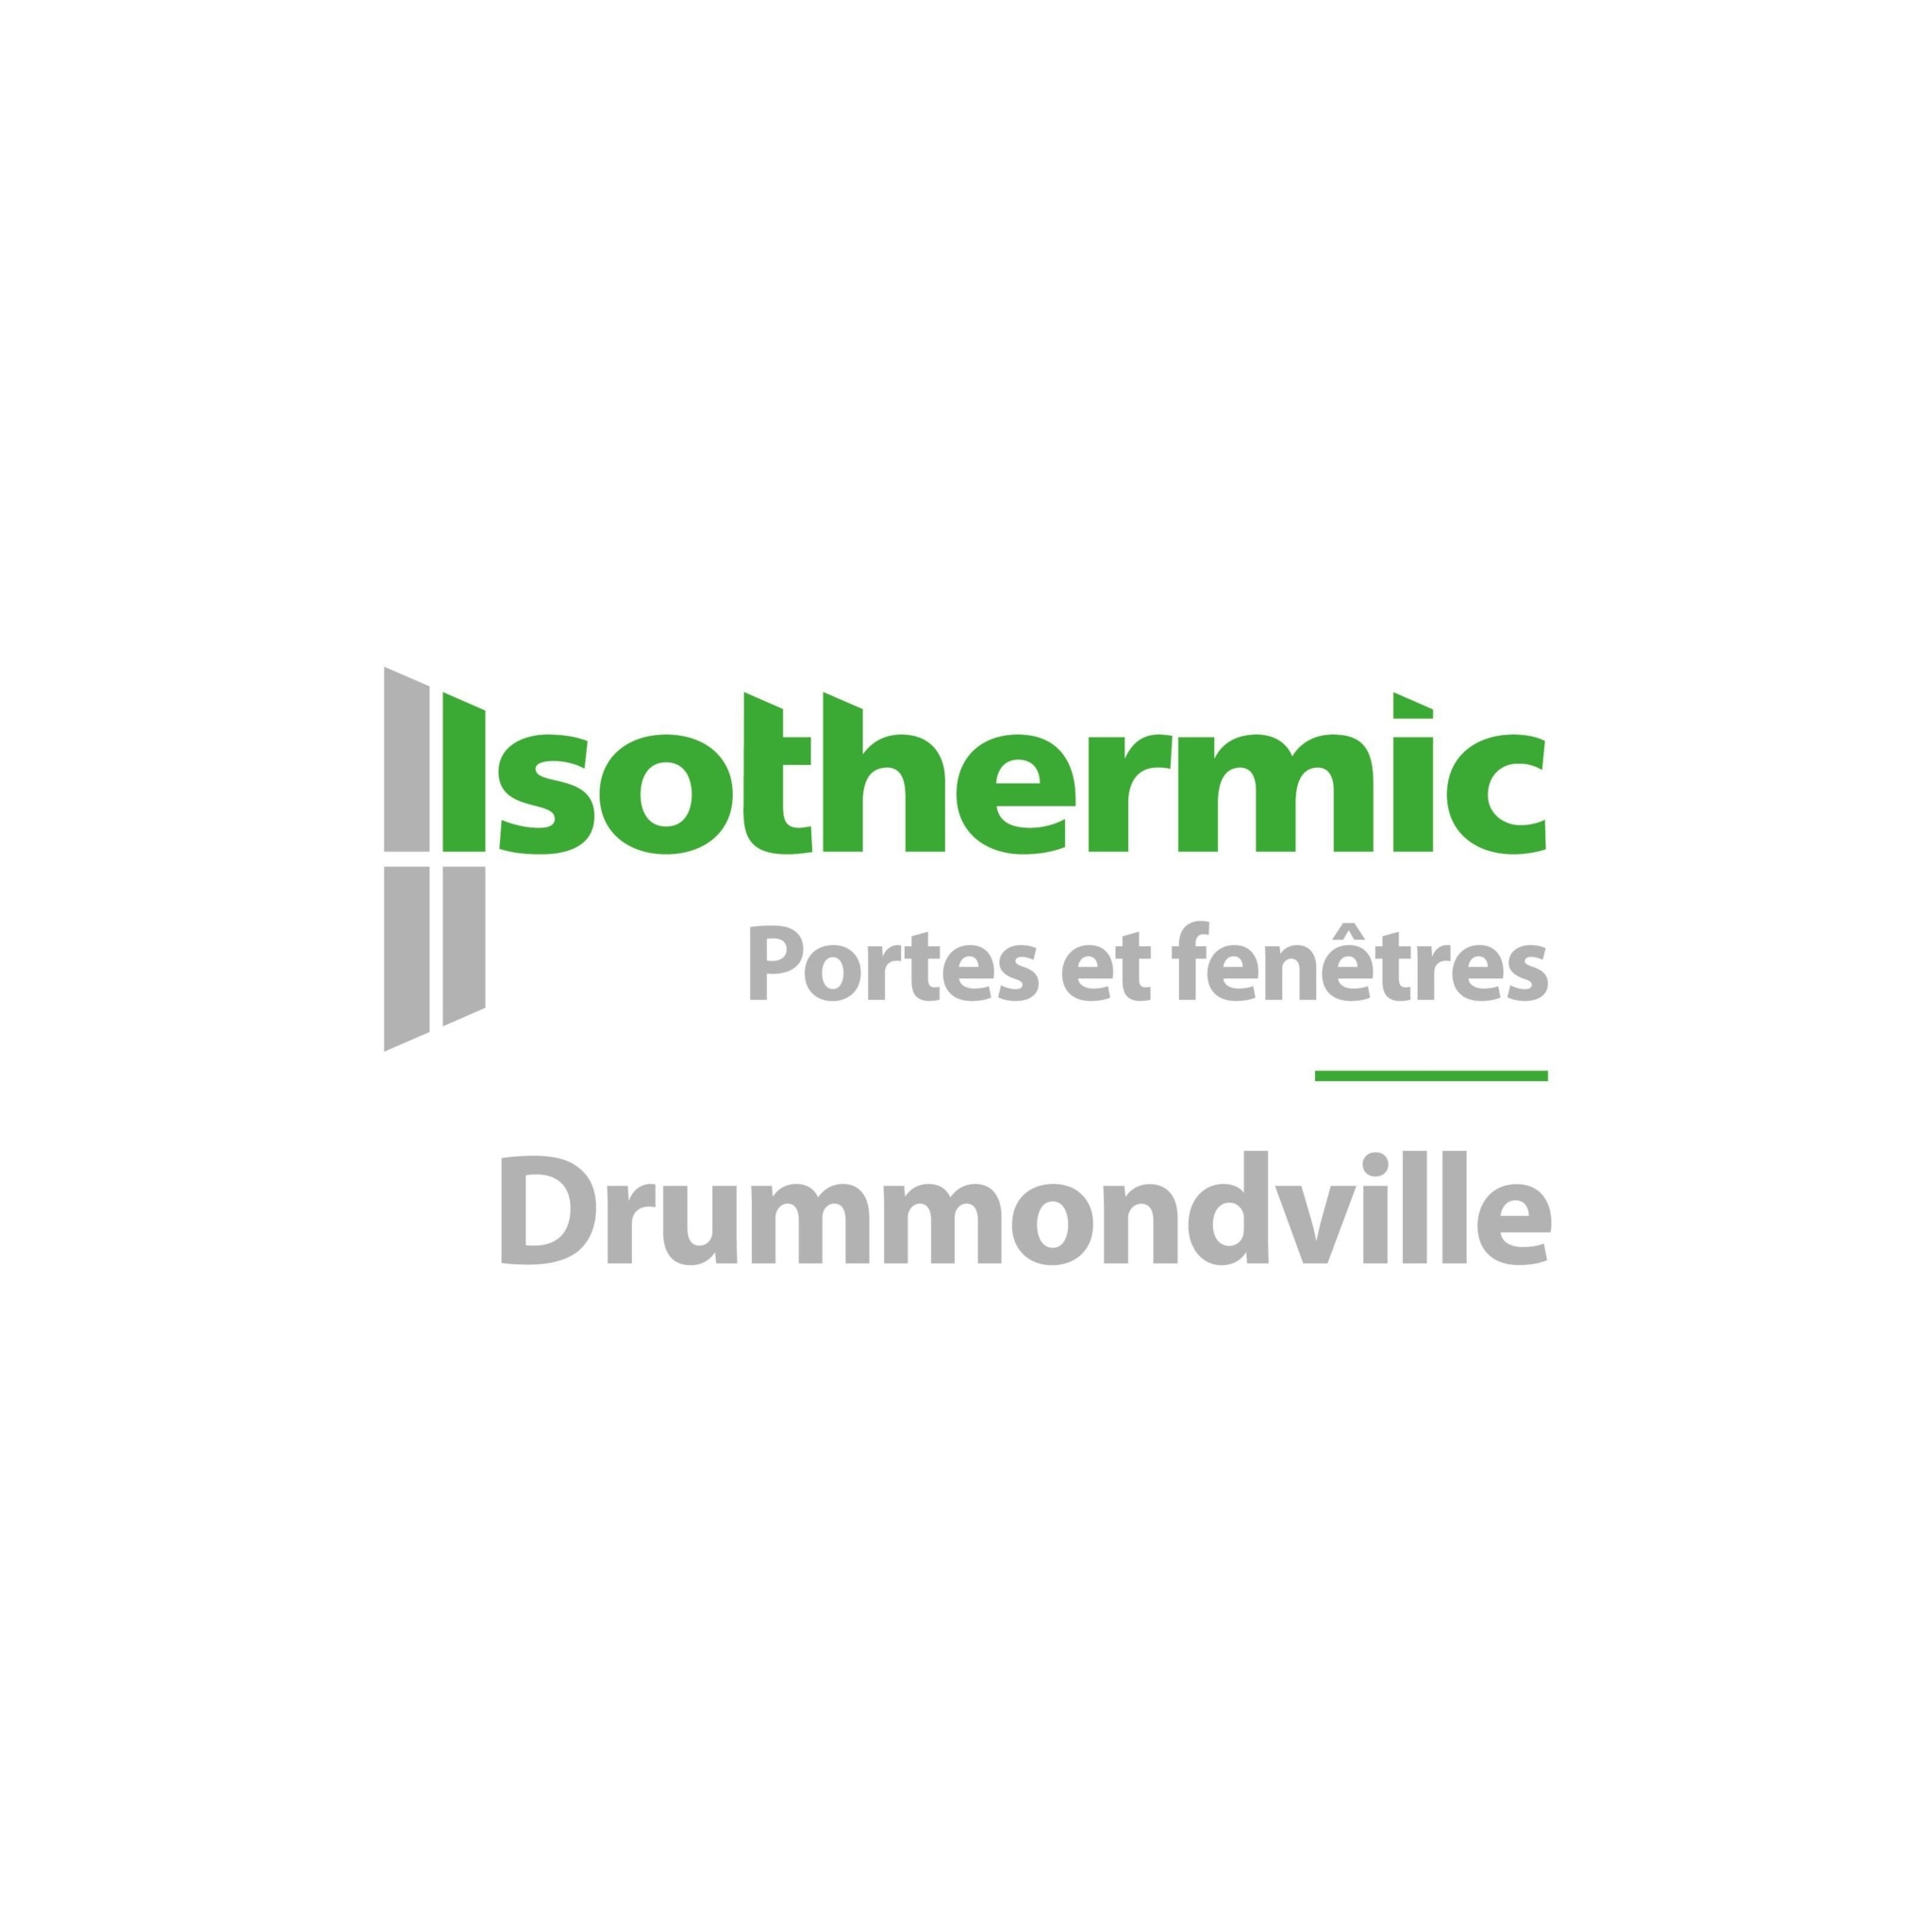 Isothermic portes et fenêtres | Drummondville - Windows